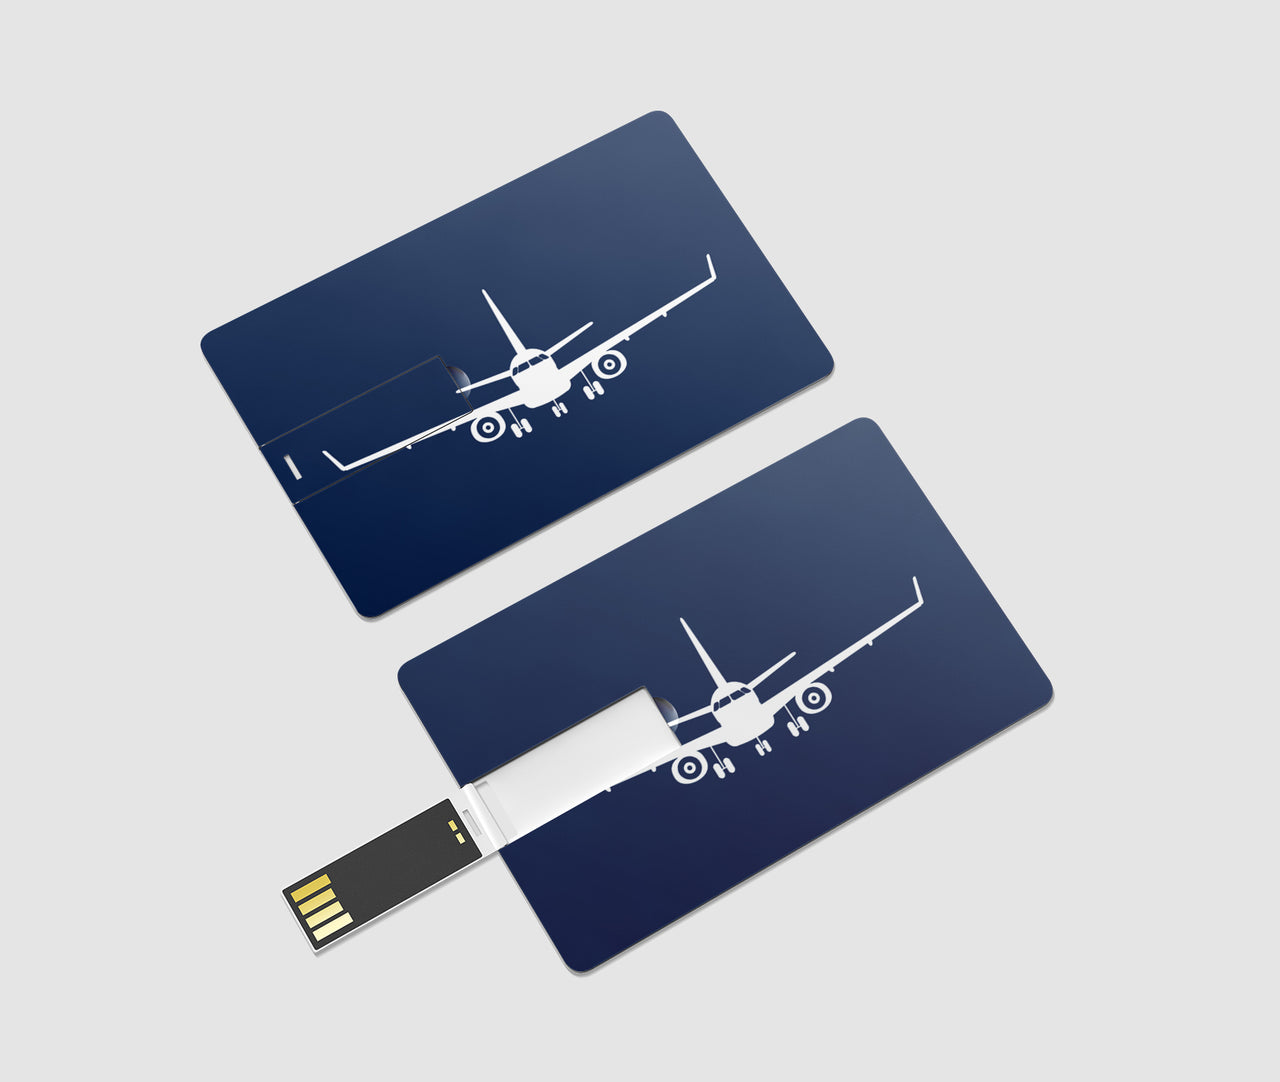 Embraer E-190 Silhouette Plane Designed USB Cards